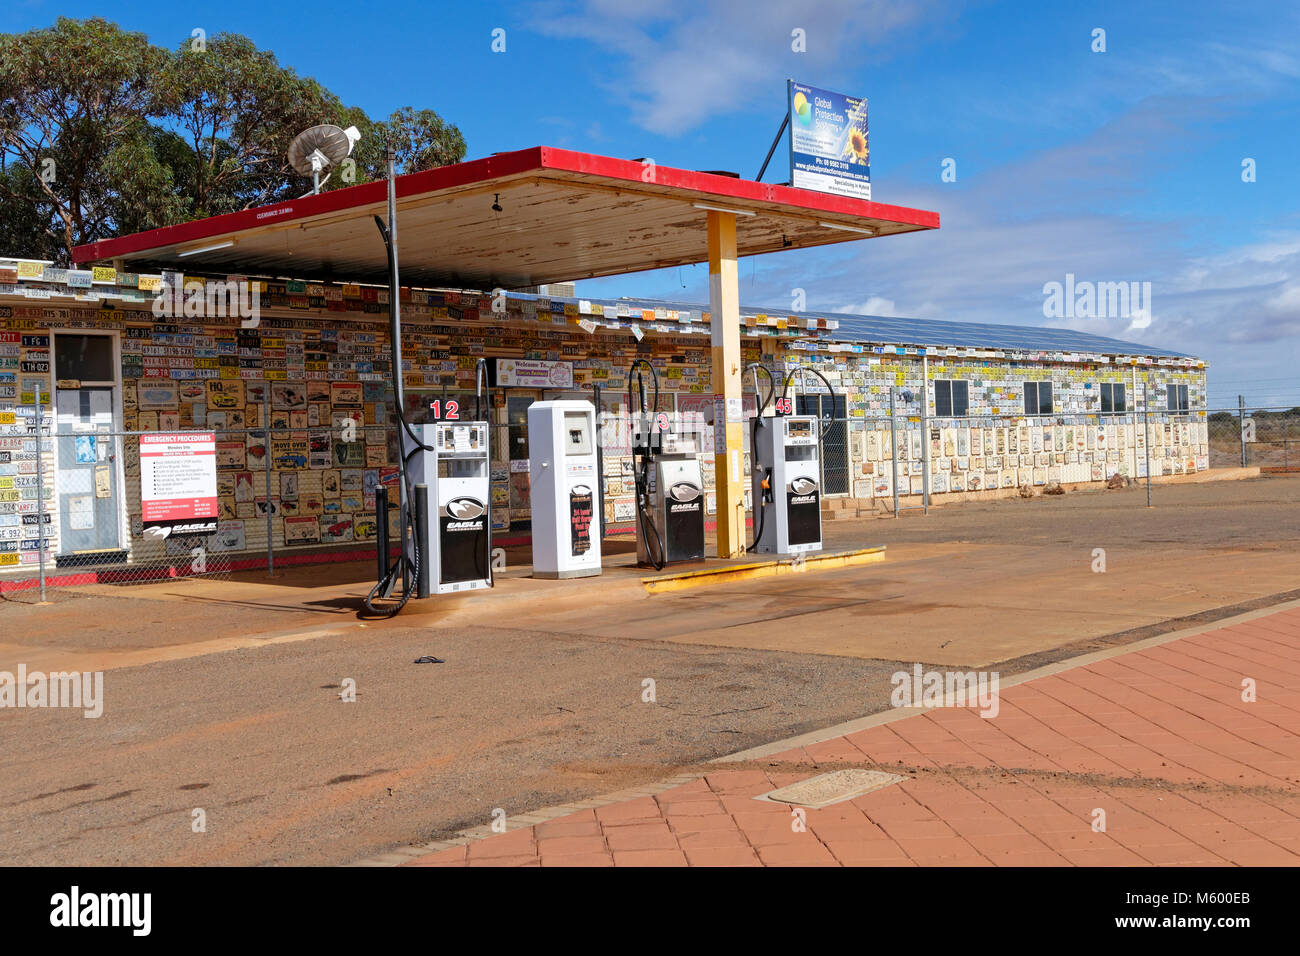 Station de carburant avec des murs couverts de plaques de numéro de voiture et souvenirs australiens, Menzies, Murchison, dans l'ouest de l'Australie Banque D'Images